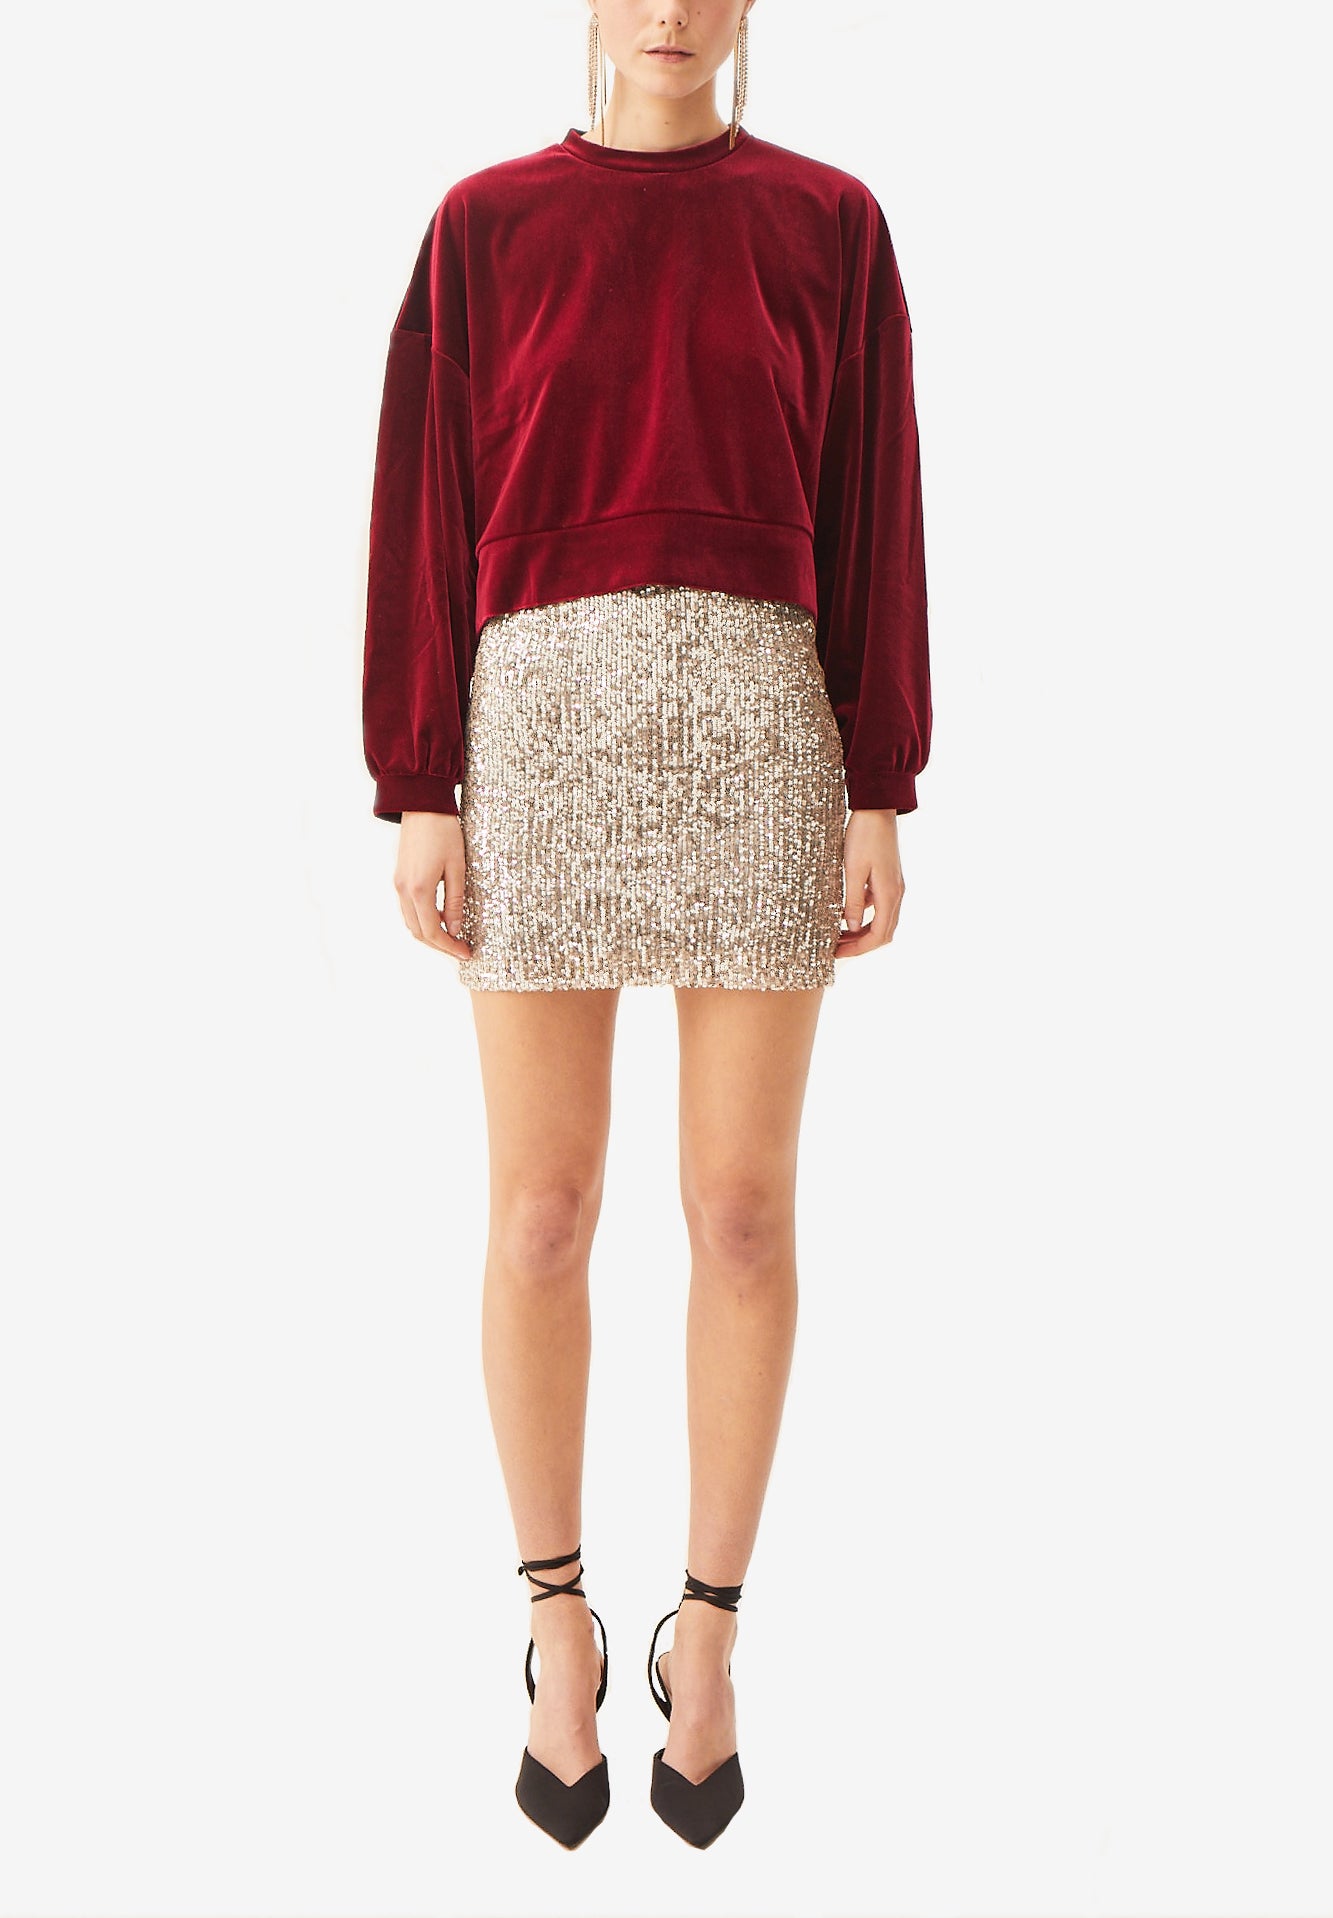 LINDA - short burgundy sequin skirt